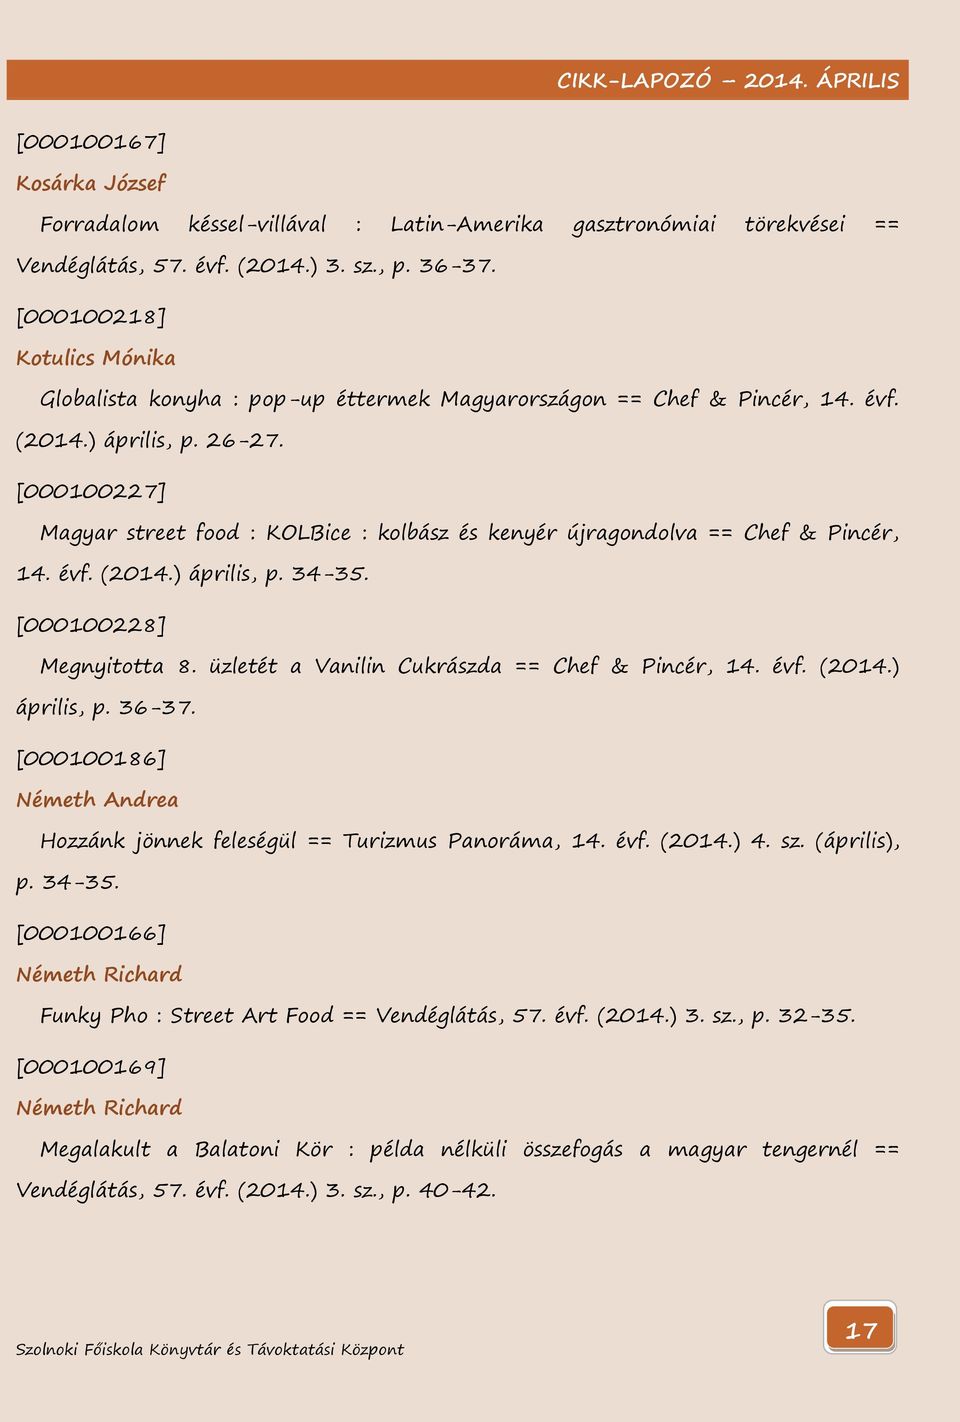 [000100227] Magyar street food : KOLBice : kolbász és kenyér újragondolva == Chef & Pincér, 14. évf. (2014.) április, p. 34-35. [000100228] Megnyitotta 8.